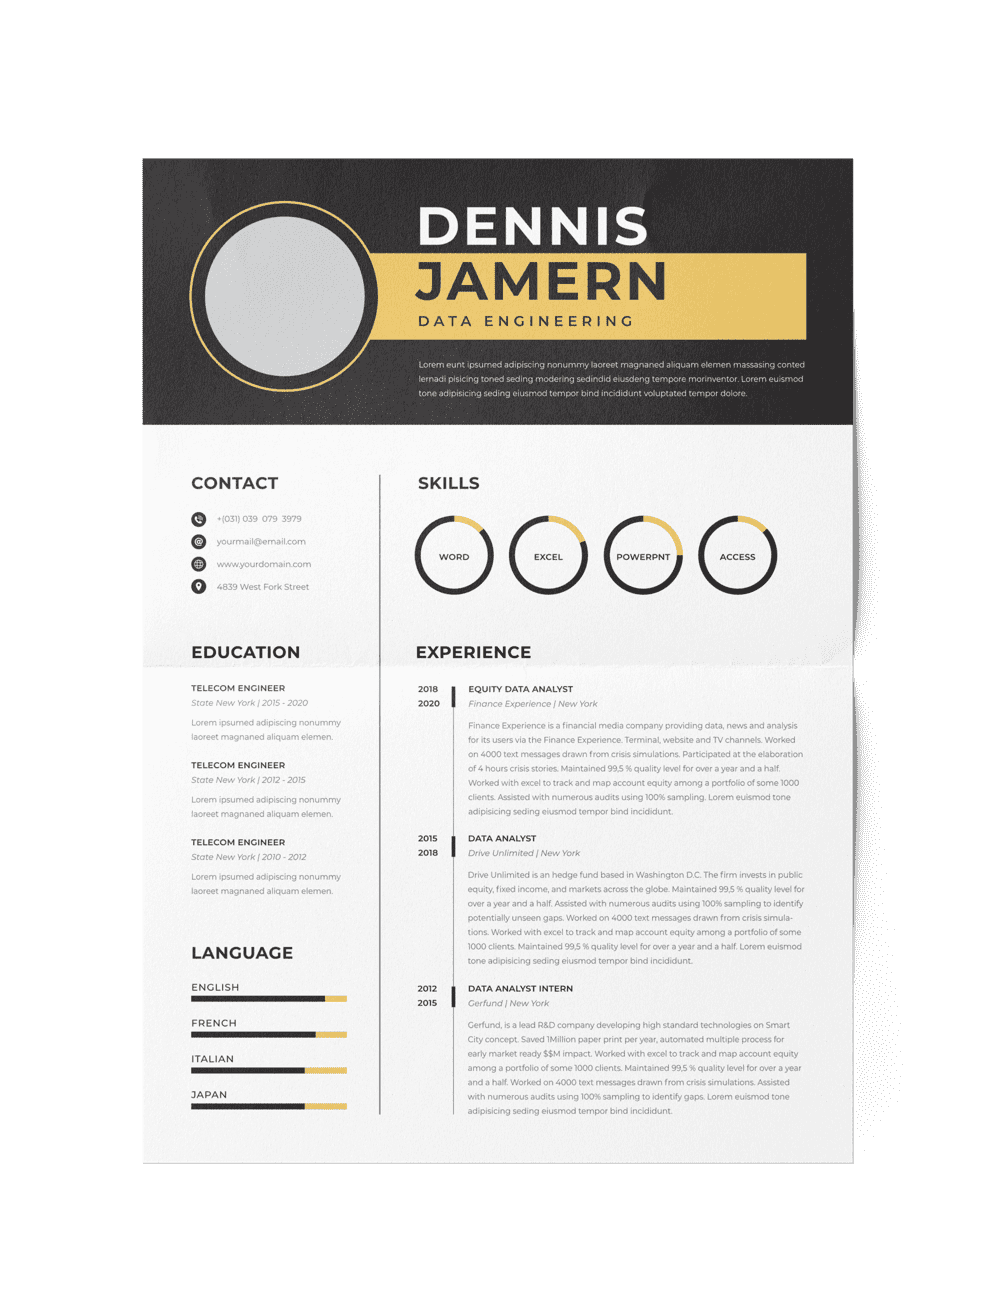 CV #32 Dennis Jamern (sport)